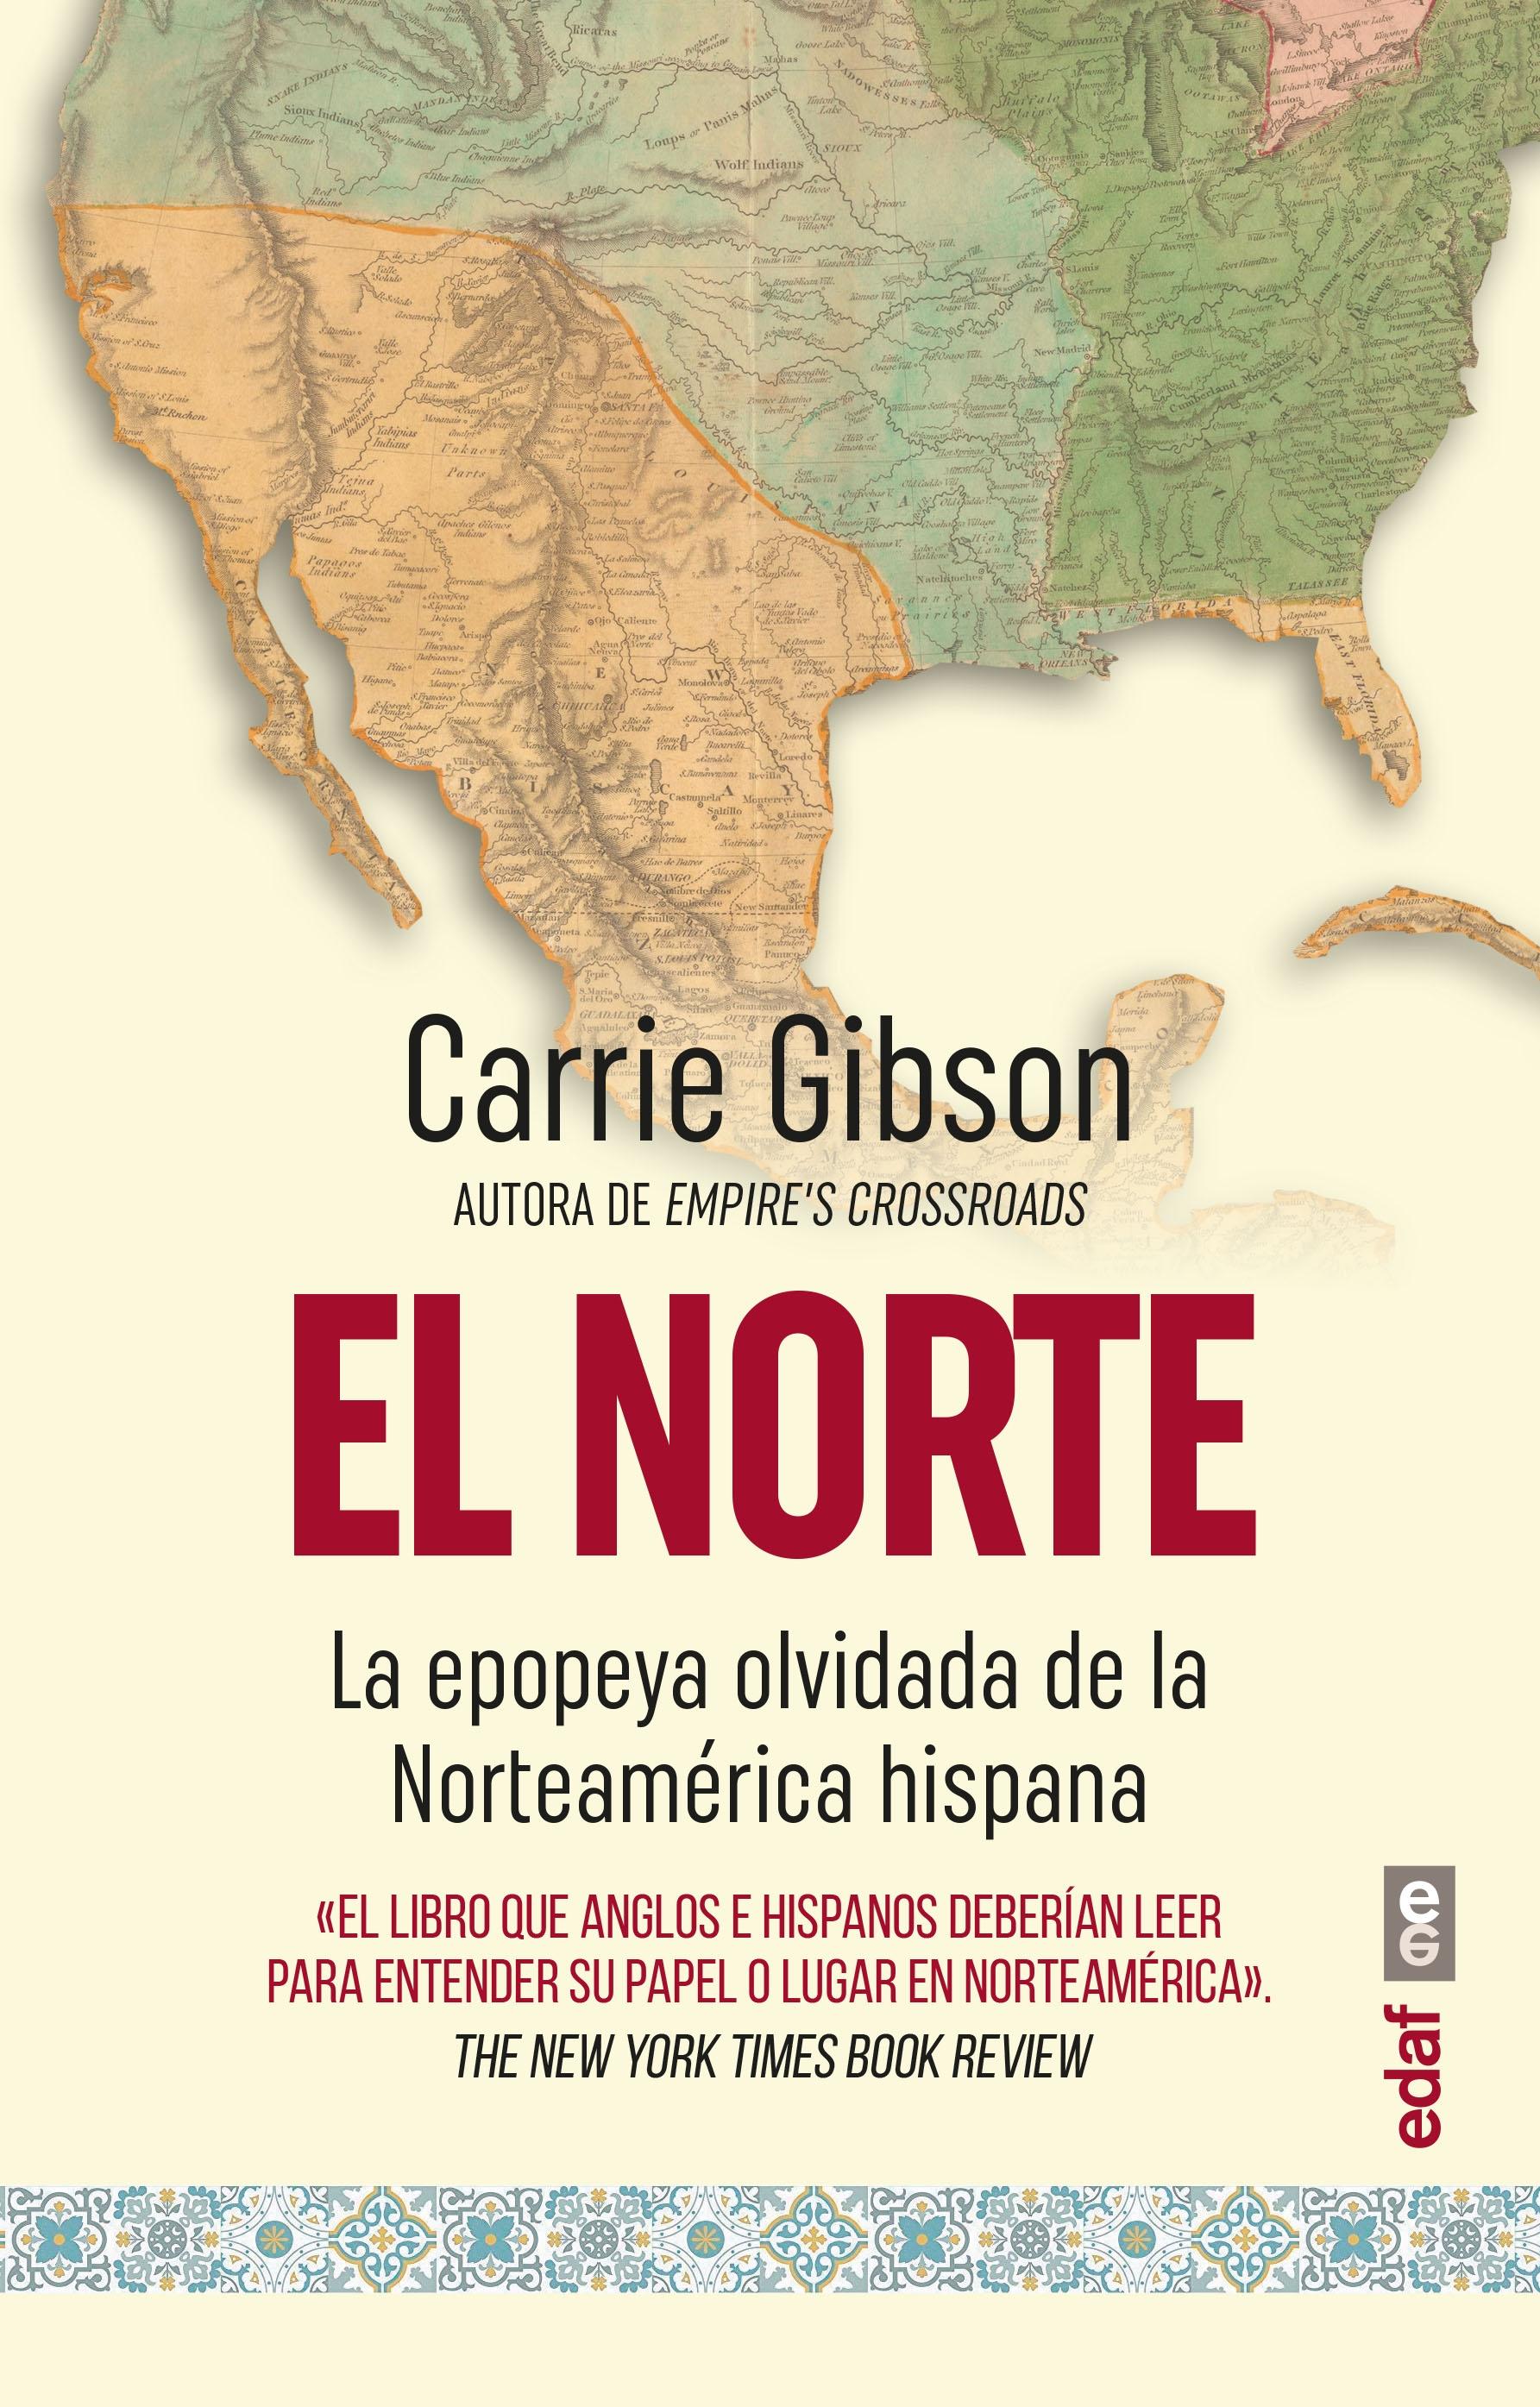 Norte, El  "La epopeya olvidada de la Norteamérica hispana"